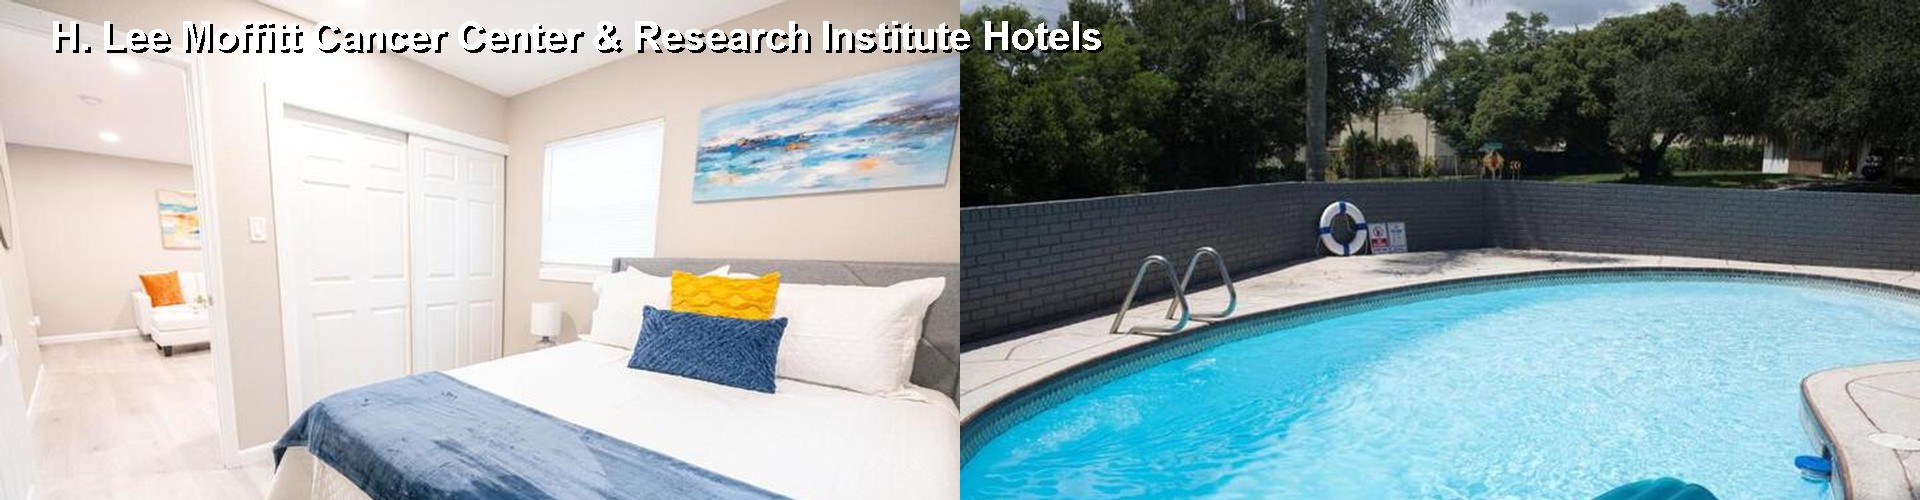 5 Best Hotels near H. Lee Moffitt Cancer Center & Research Institute